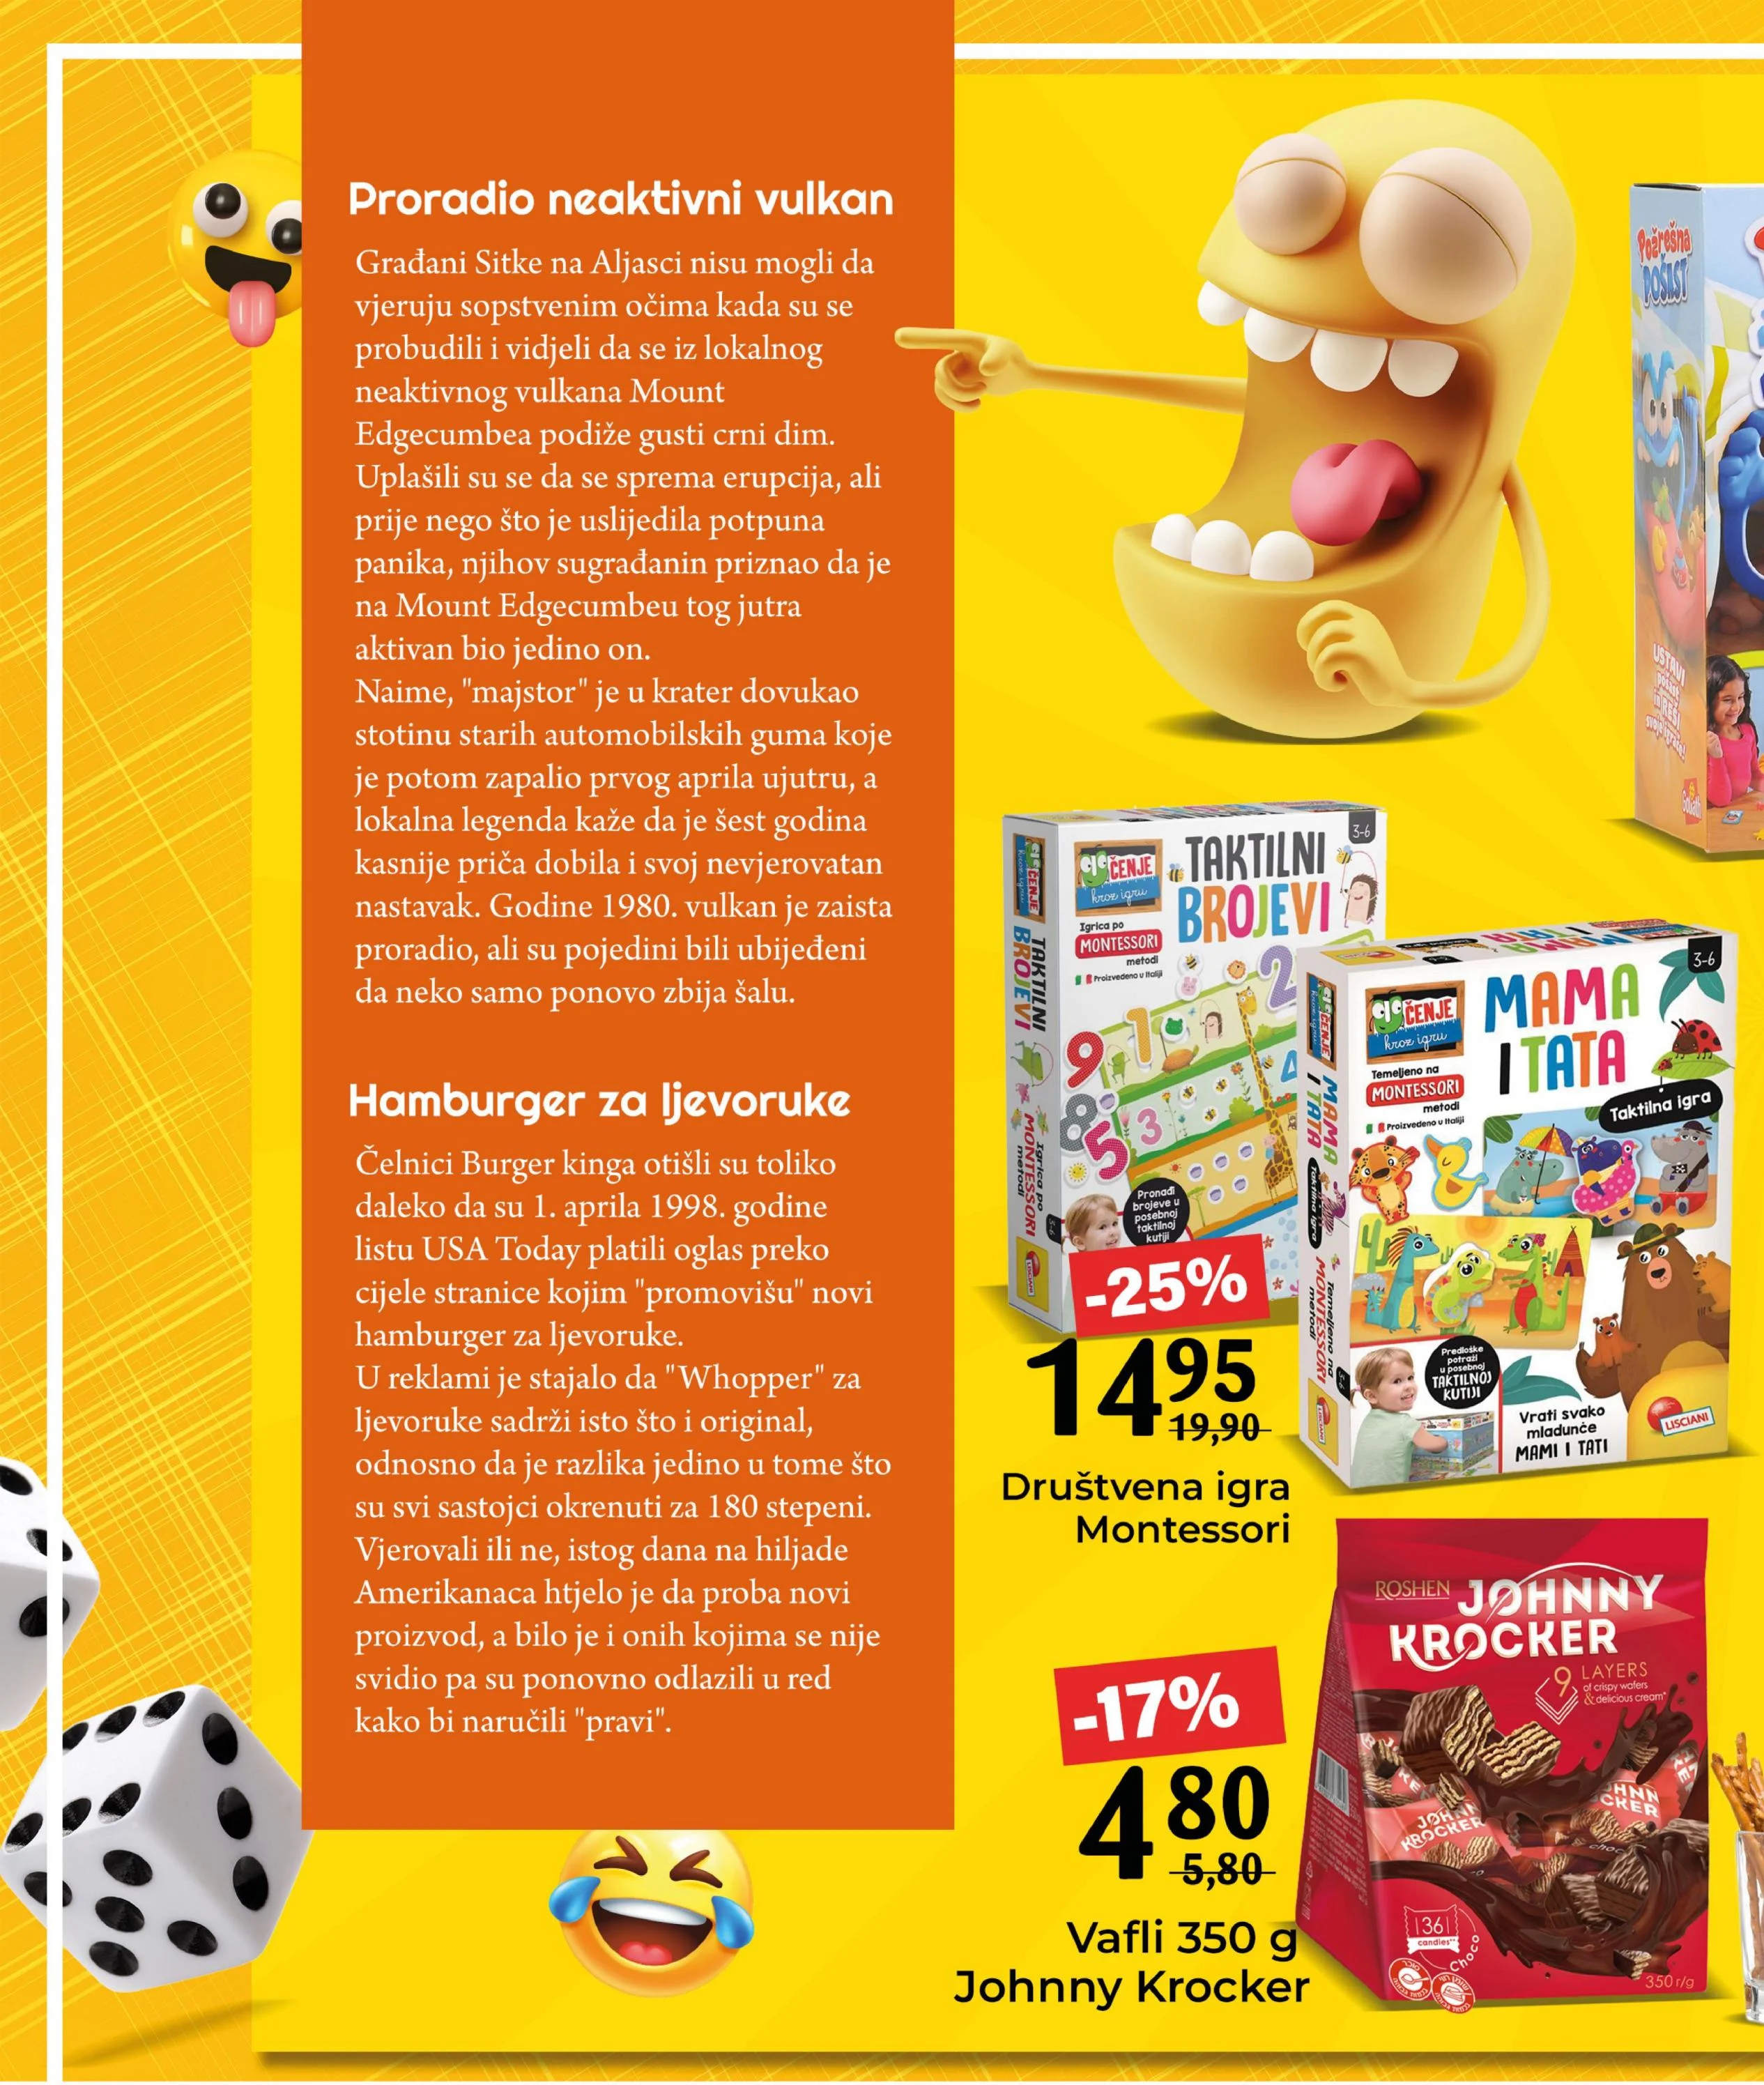 Bingo katalog Magazin Plus 1-23.4.2024.